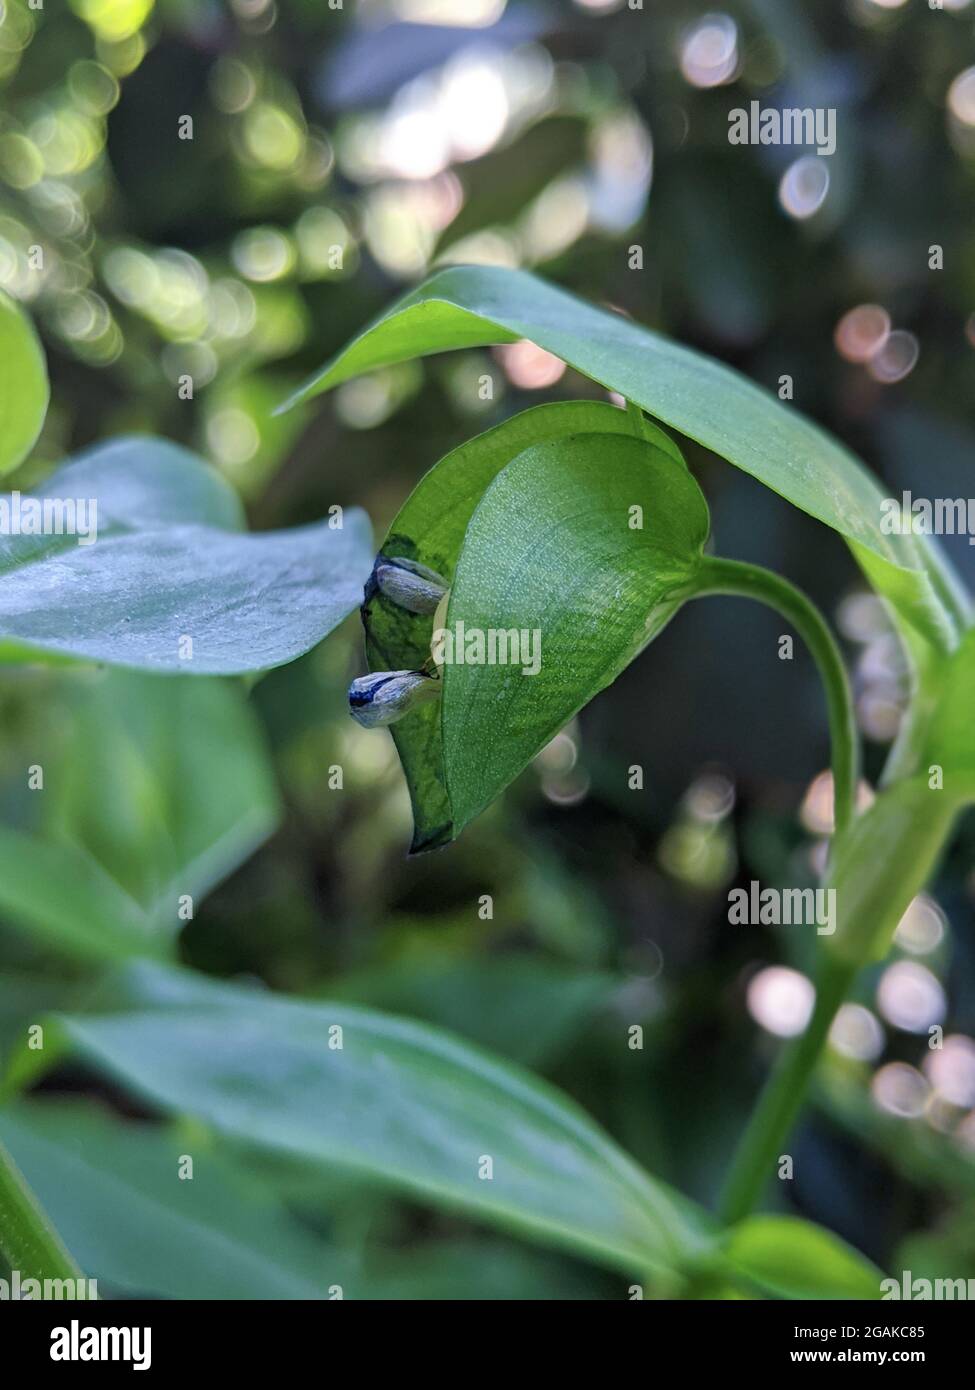 Commelina communis bud among lush green leaves Stock Photo